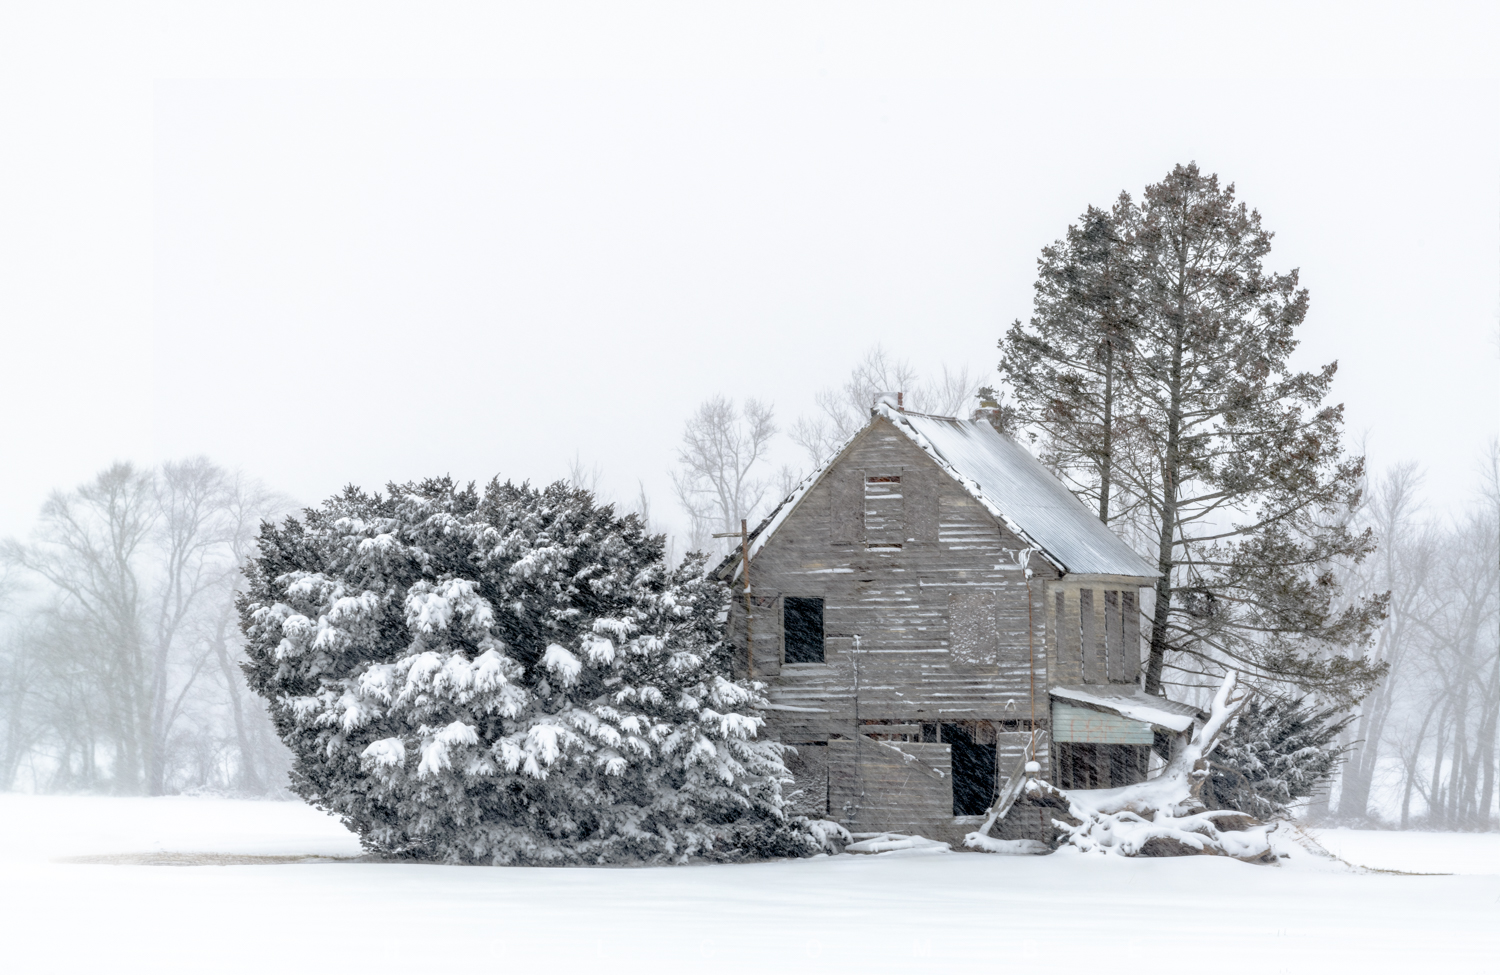 2022-01-29_blizzard_farmhouse.jpg